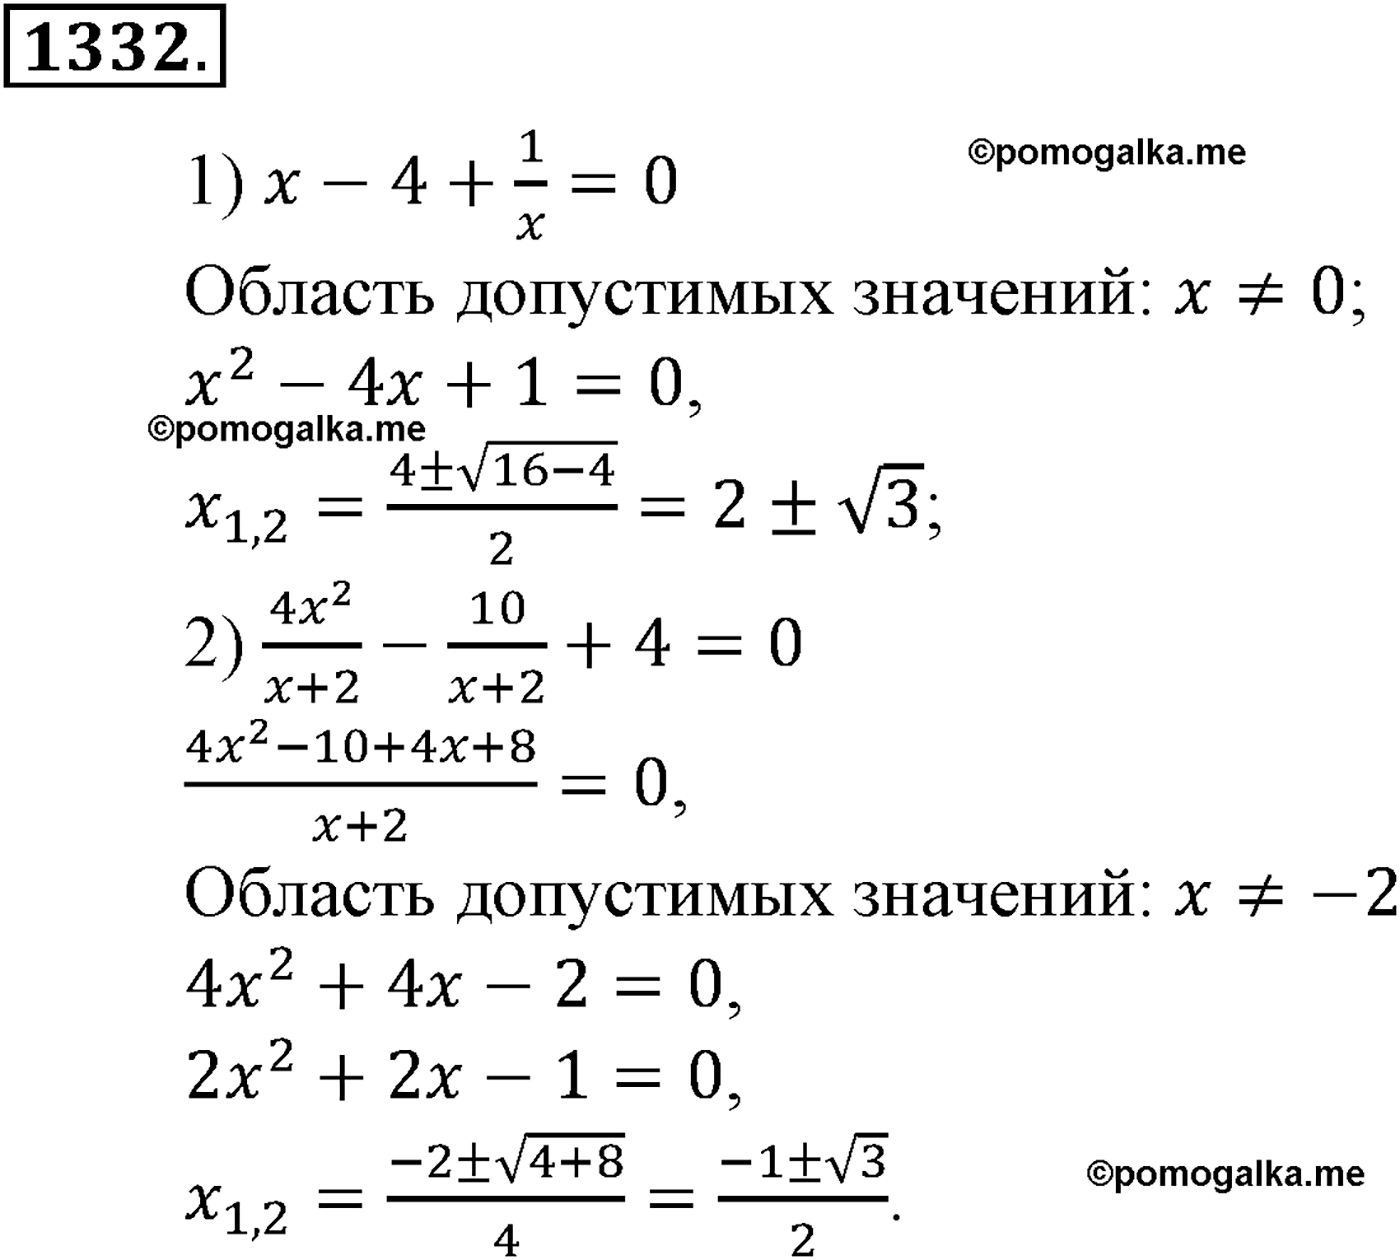 разбор задачи №1332 по алгебре за 10-11 класс из учебника Алимова, Колягина